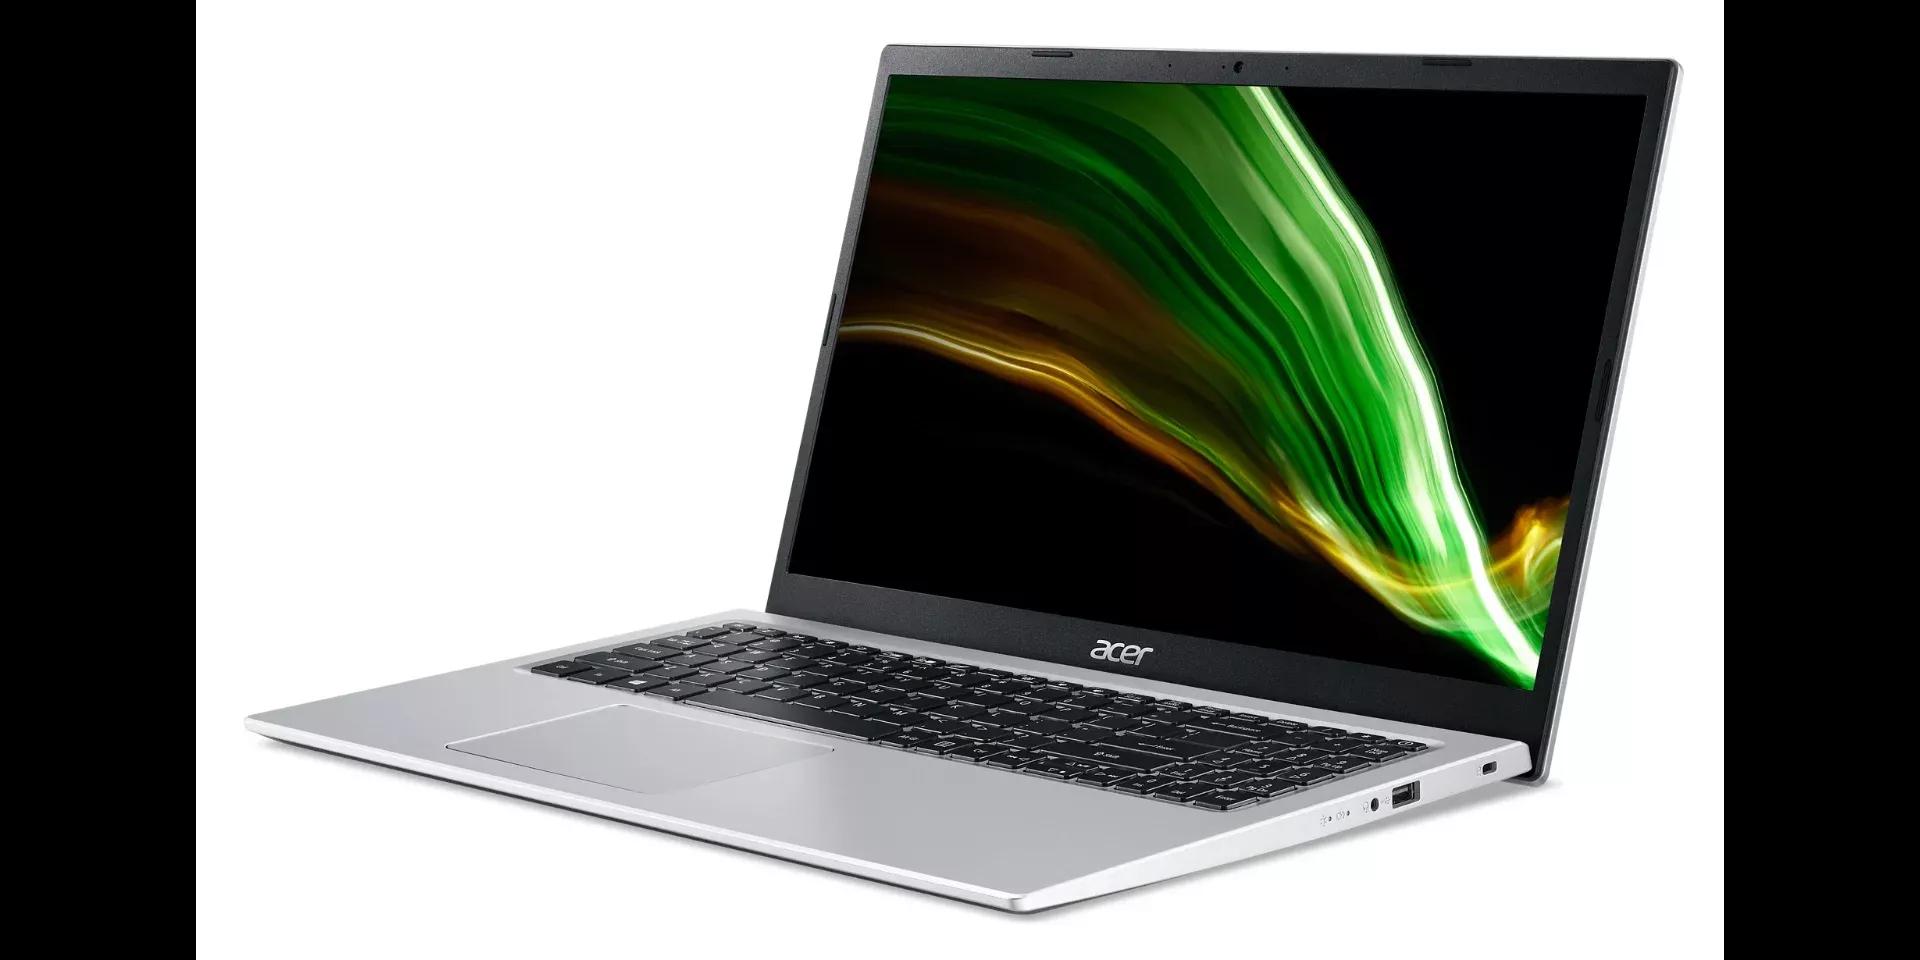 Acer Aspire 5 (2020) review